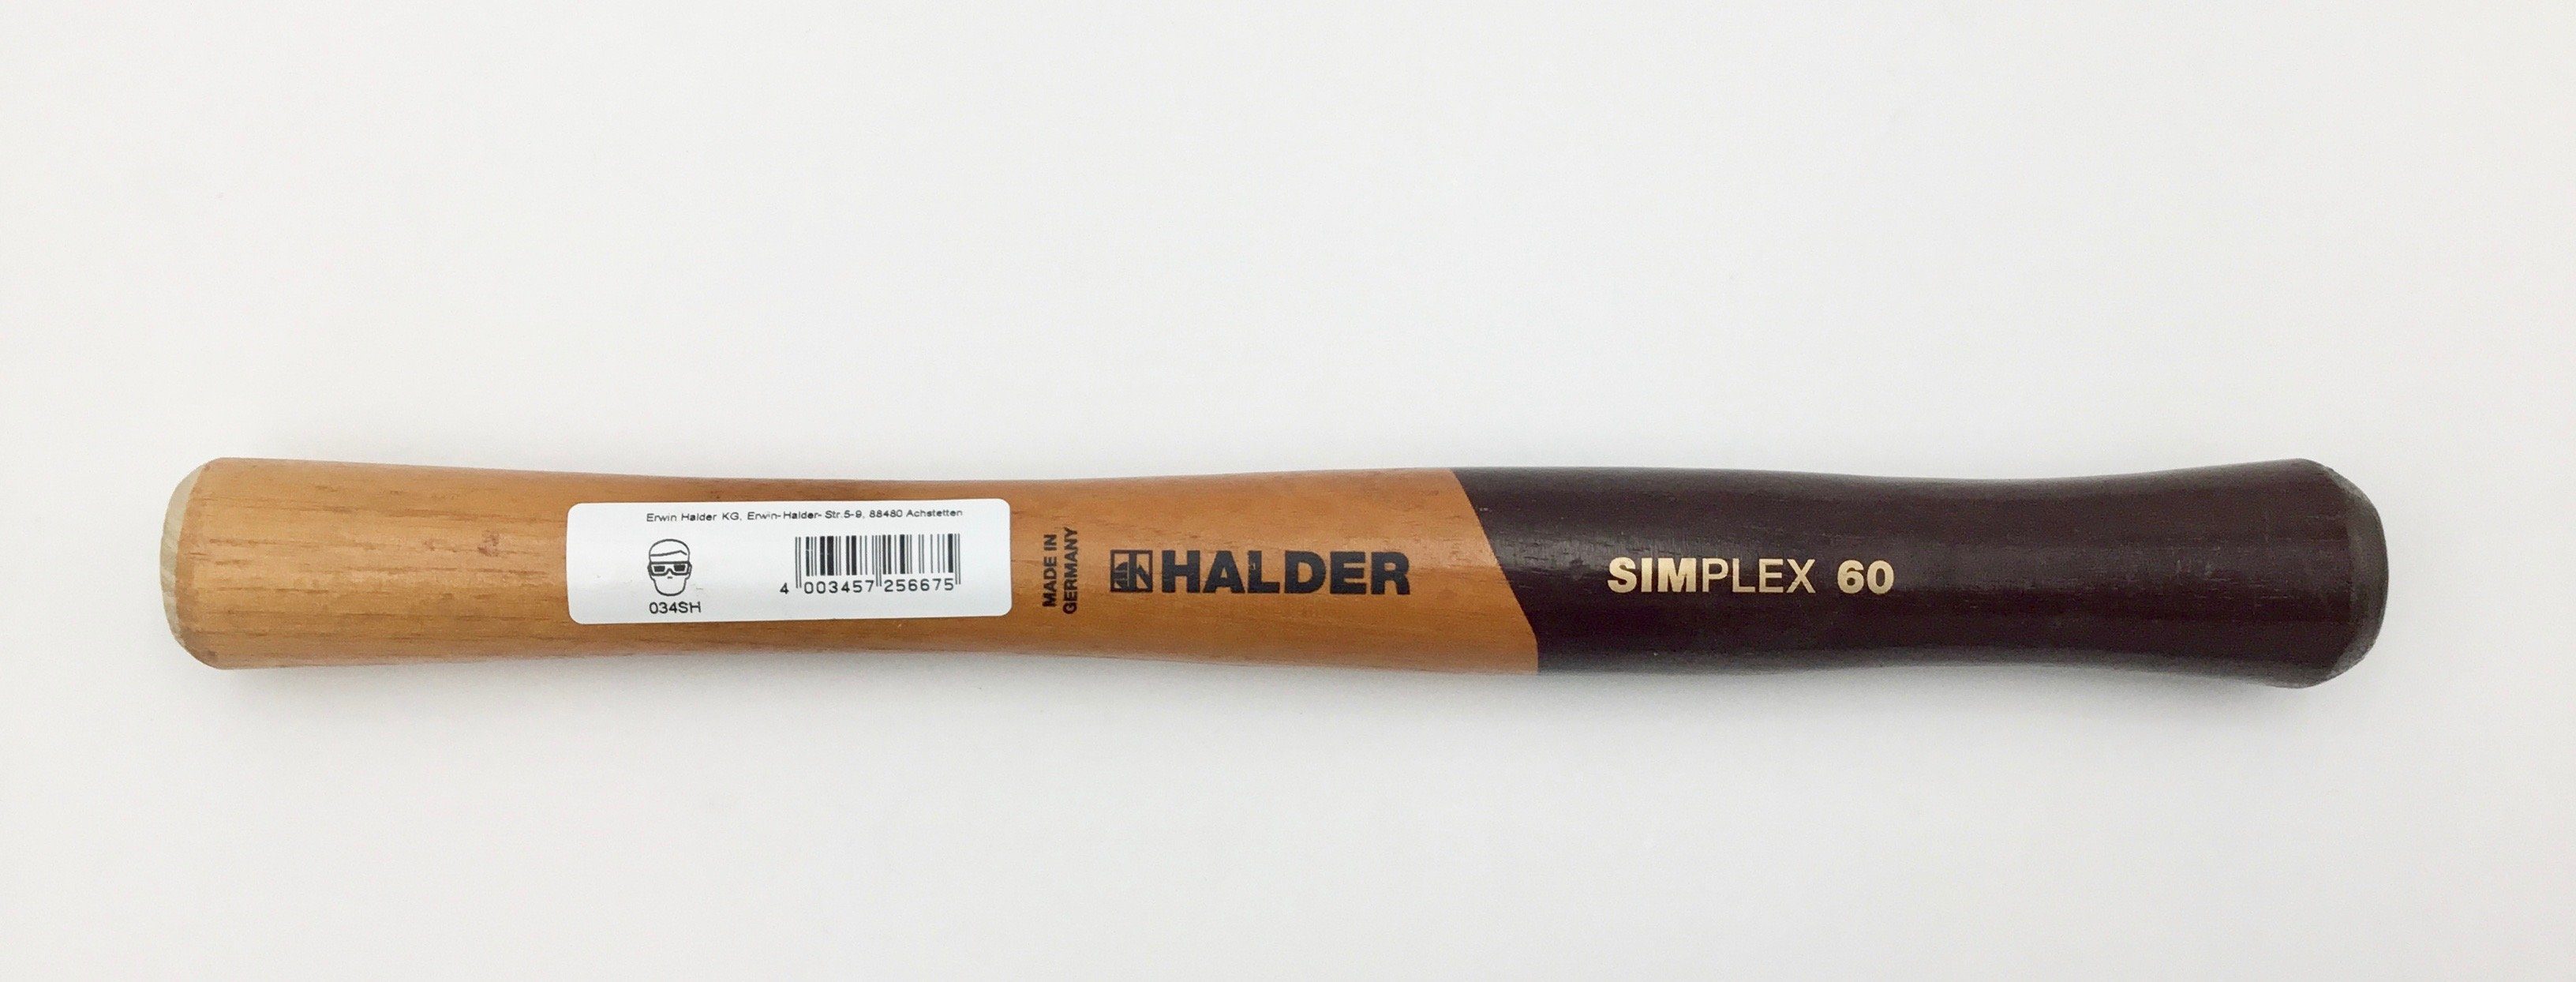 SIMPLEX Halder Stiel Schonhammerstiel 335mm KG TRIZERATOP 60